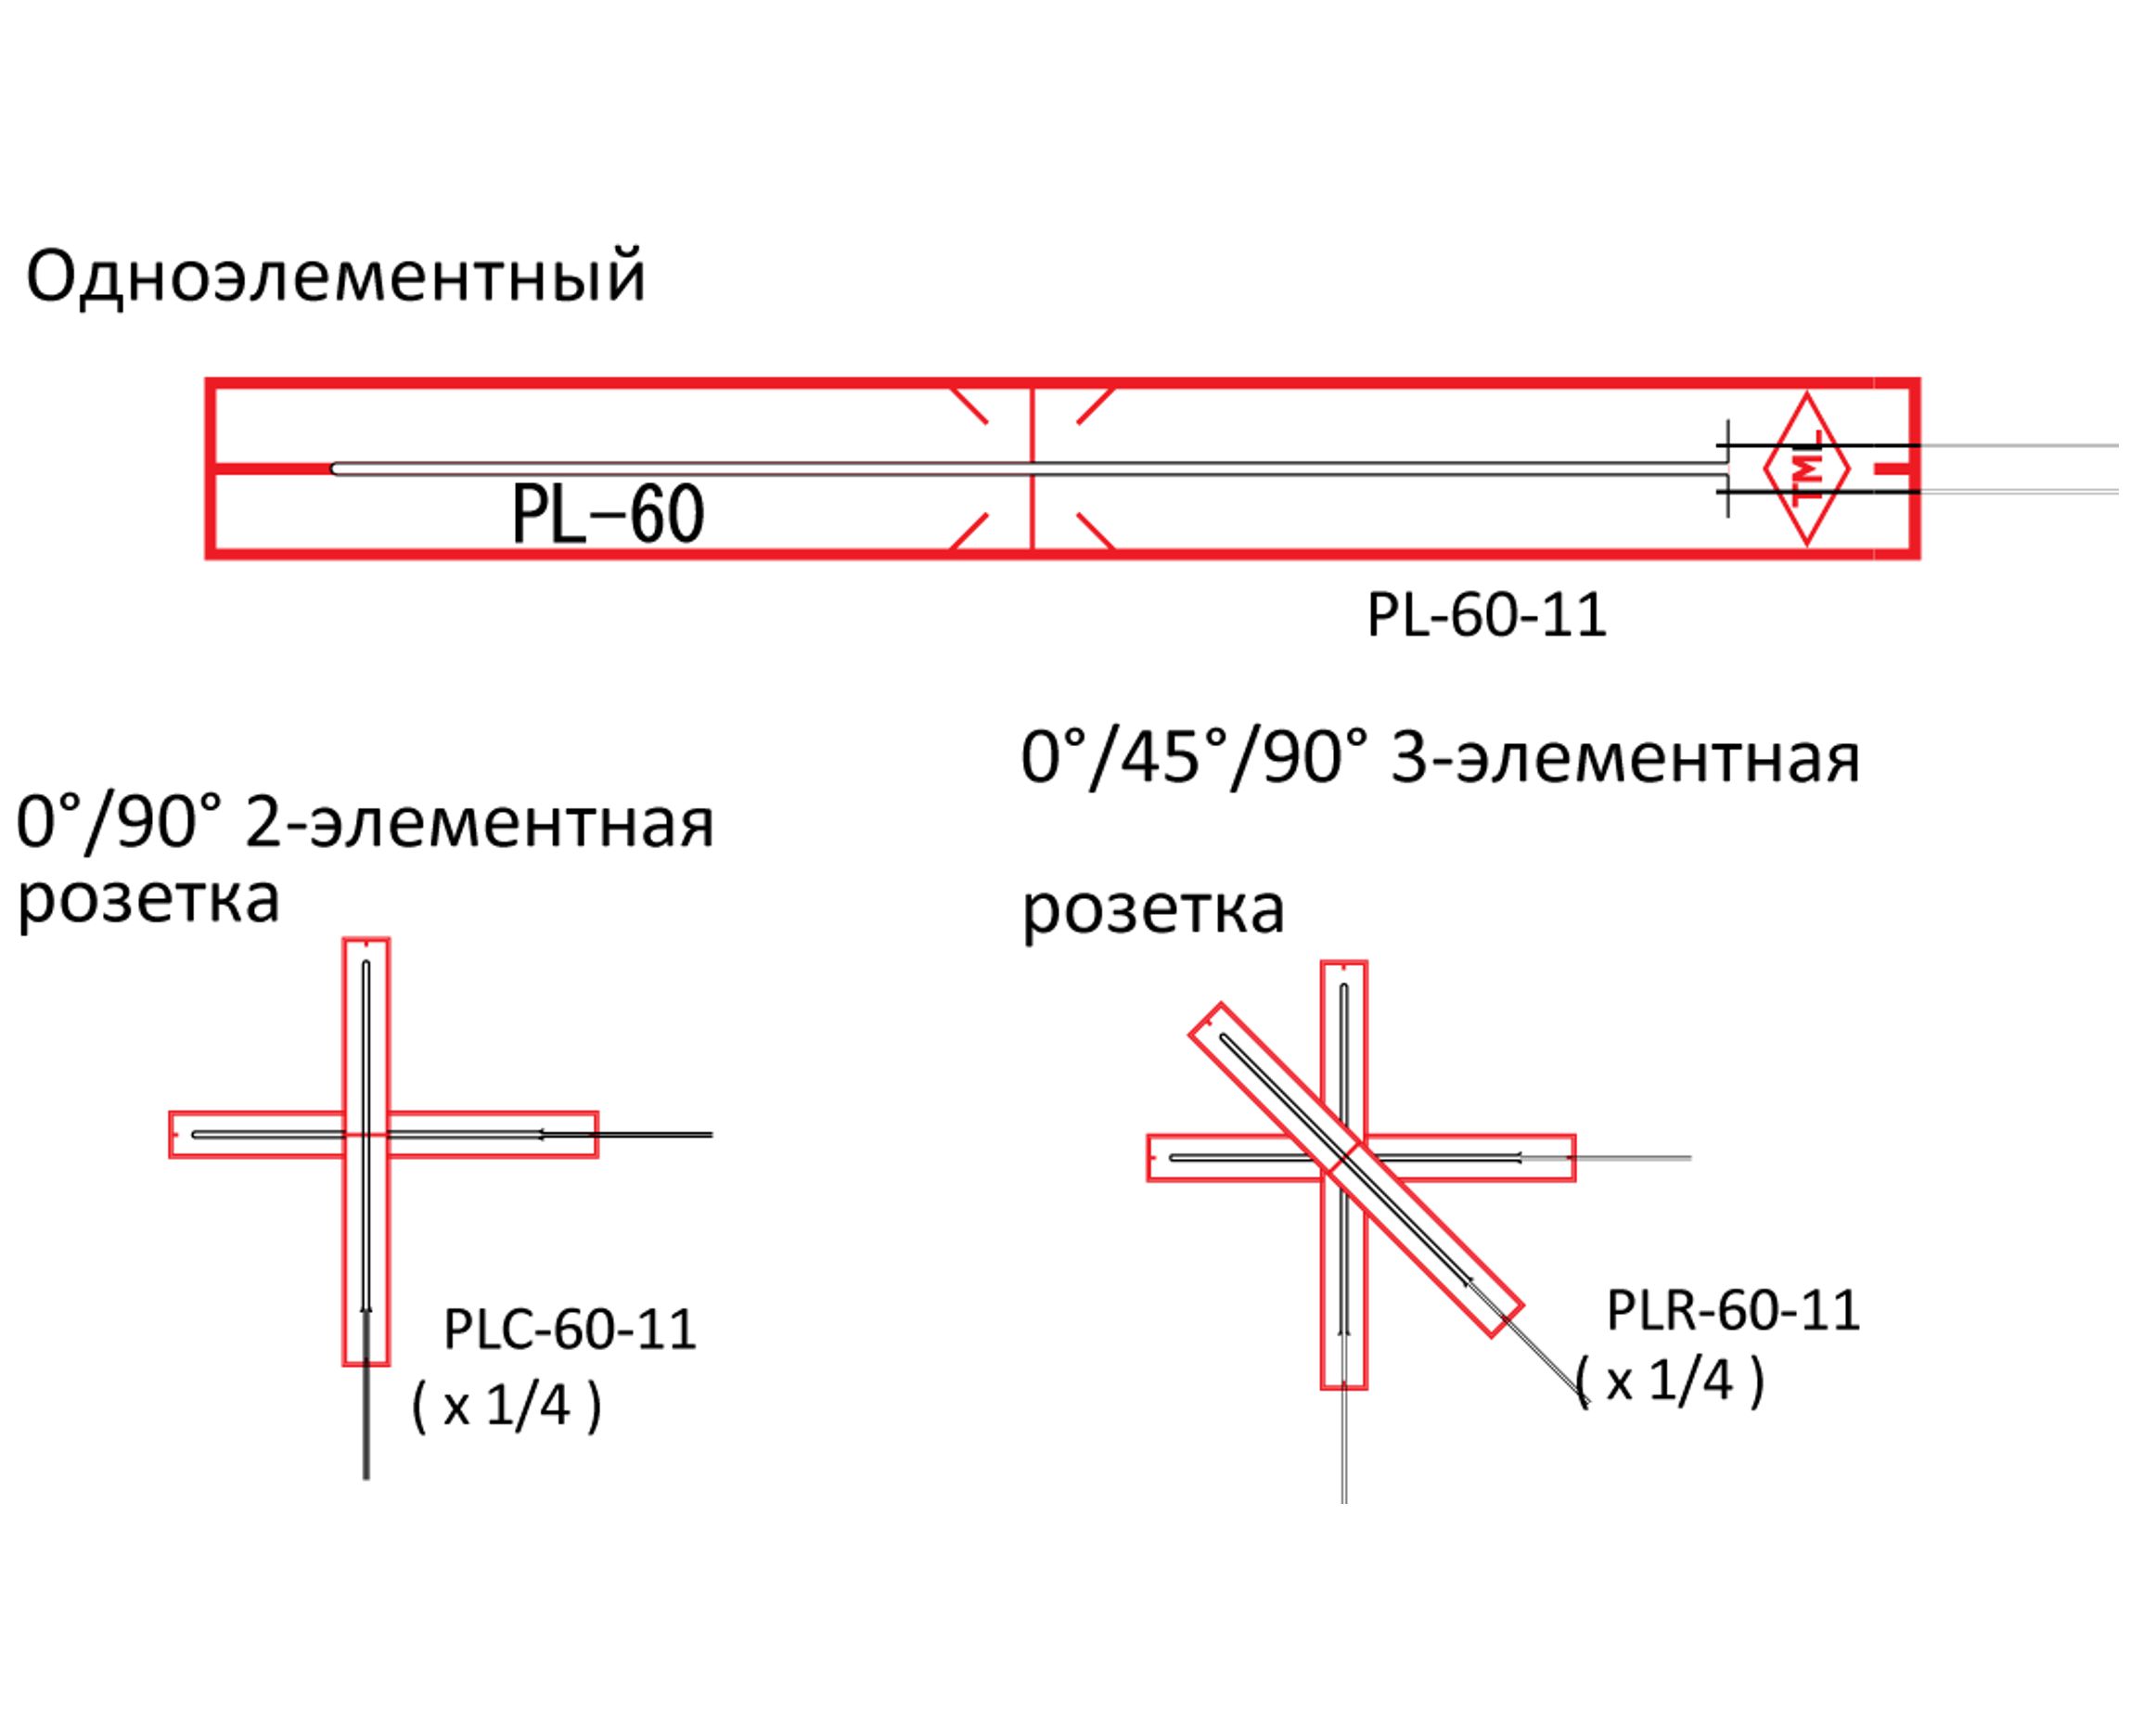 Тензорезисторы PL/PFL для бетона